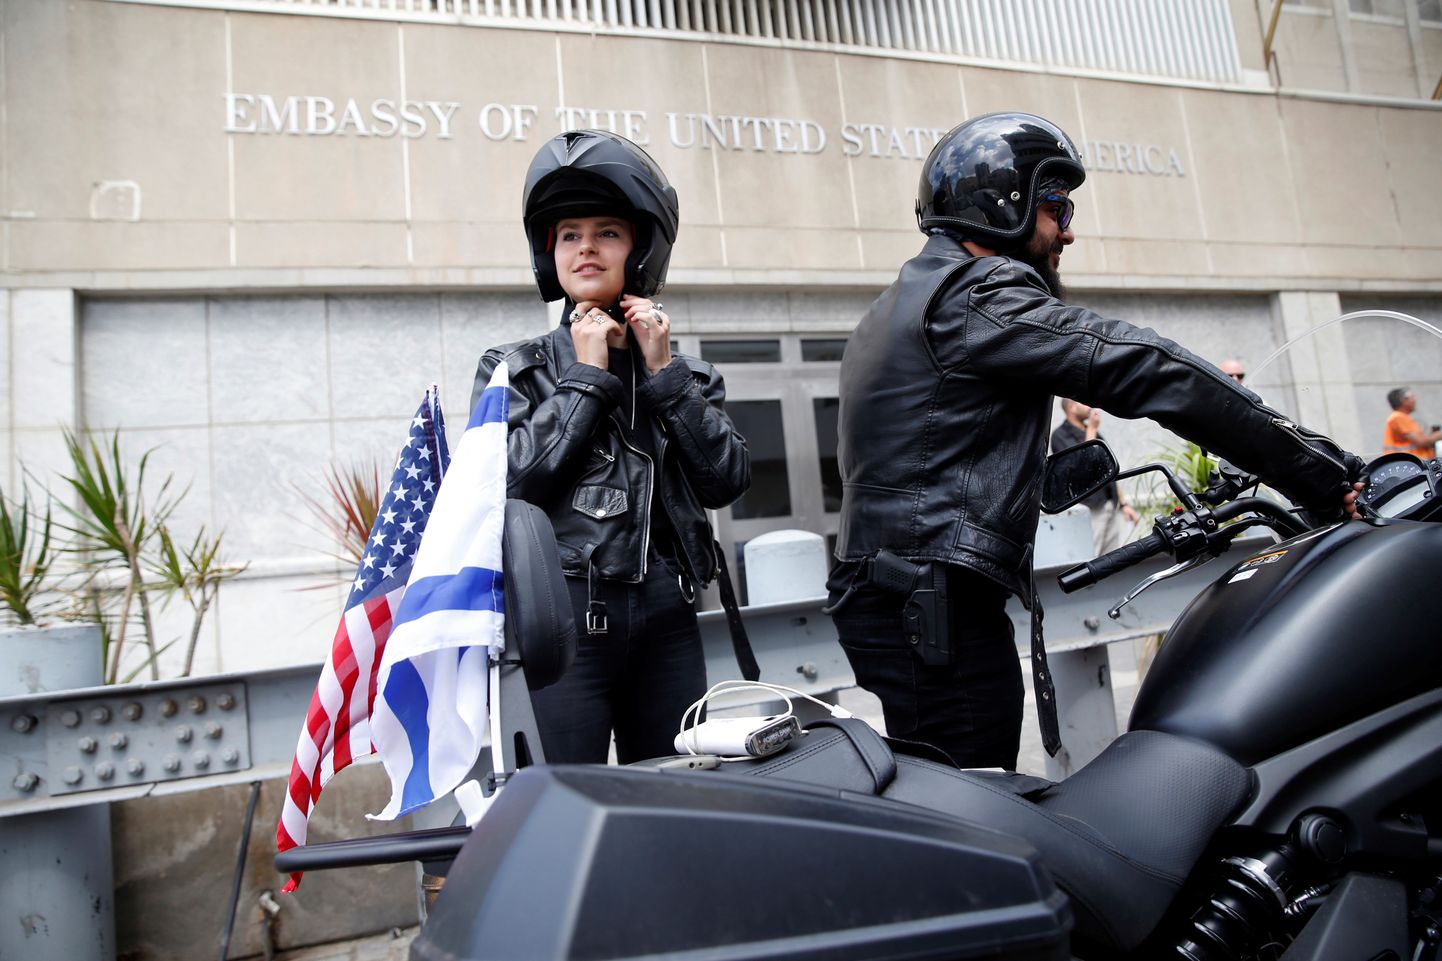 Mootorraturid Israeli Samson Ridersi klubist tähistasid saatkonna kolimist sõiduga siiani Tel Avivis asunud esinduse juurest selle uude kohta Jeruusalemmas.